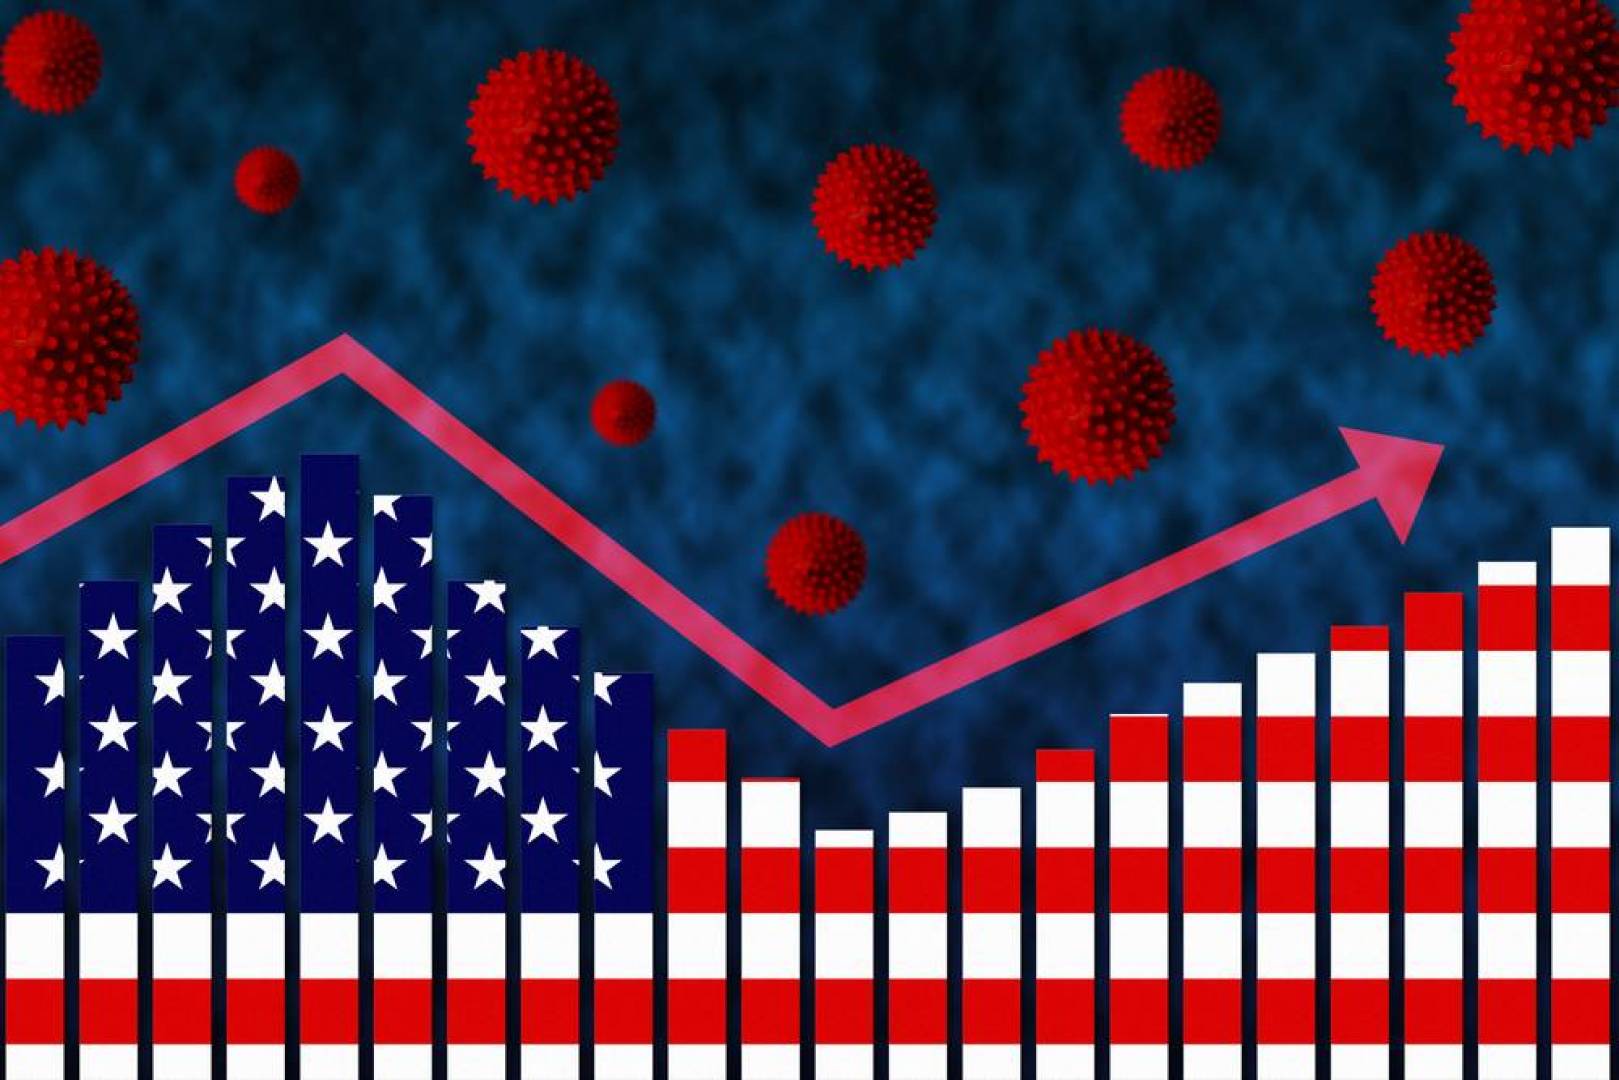 إصابات فيروس كورونا في أميركا تتجاوز 7 ملايين  